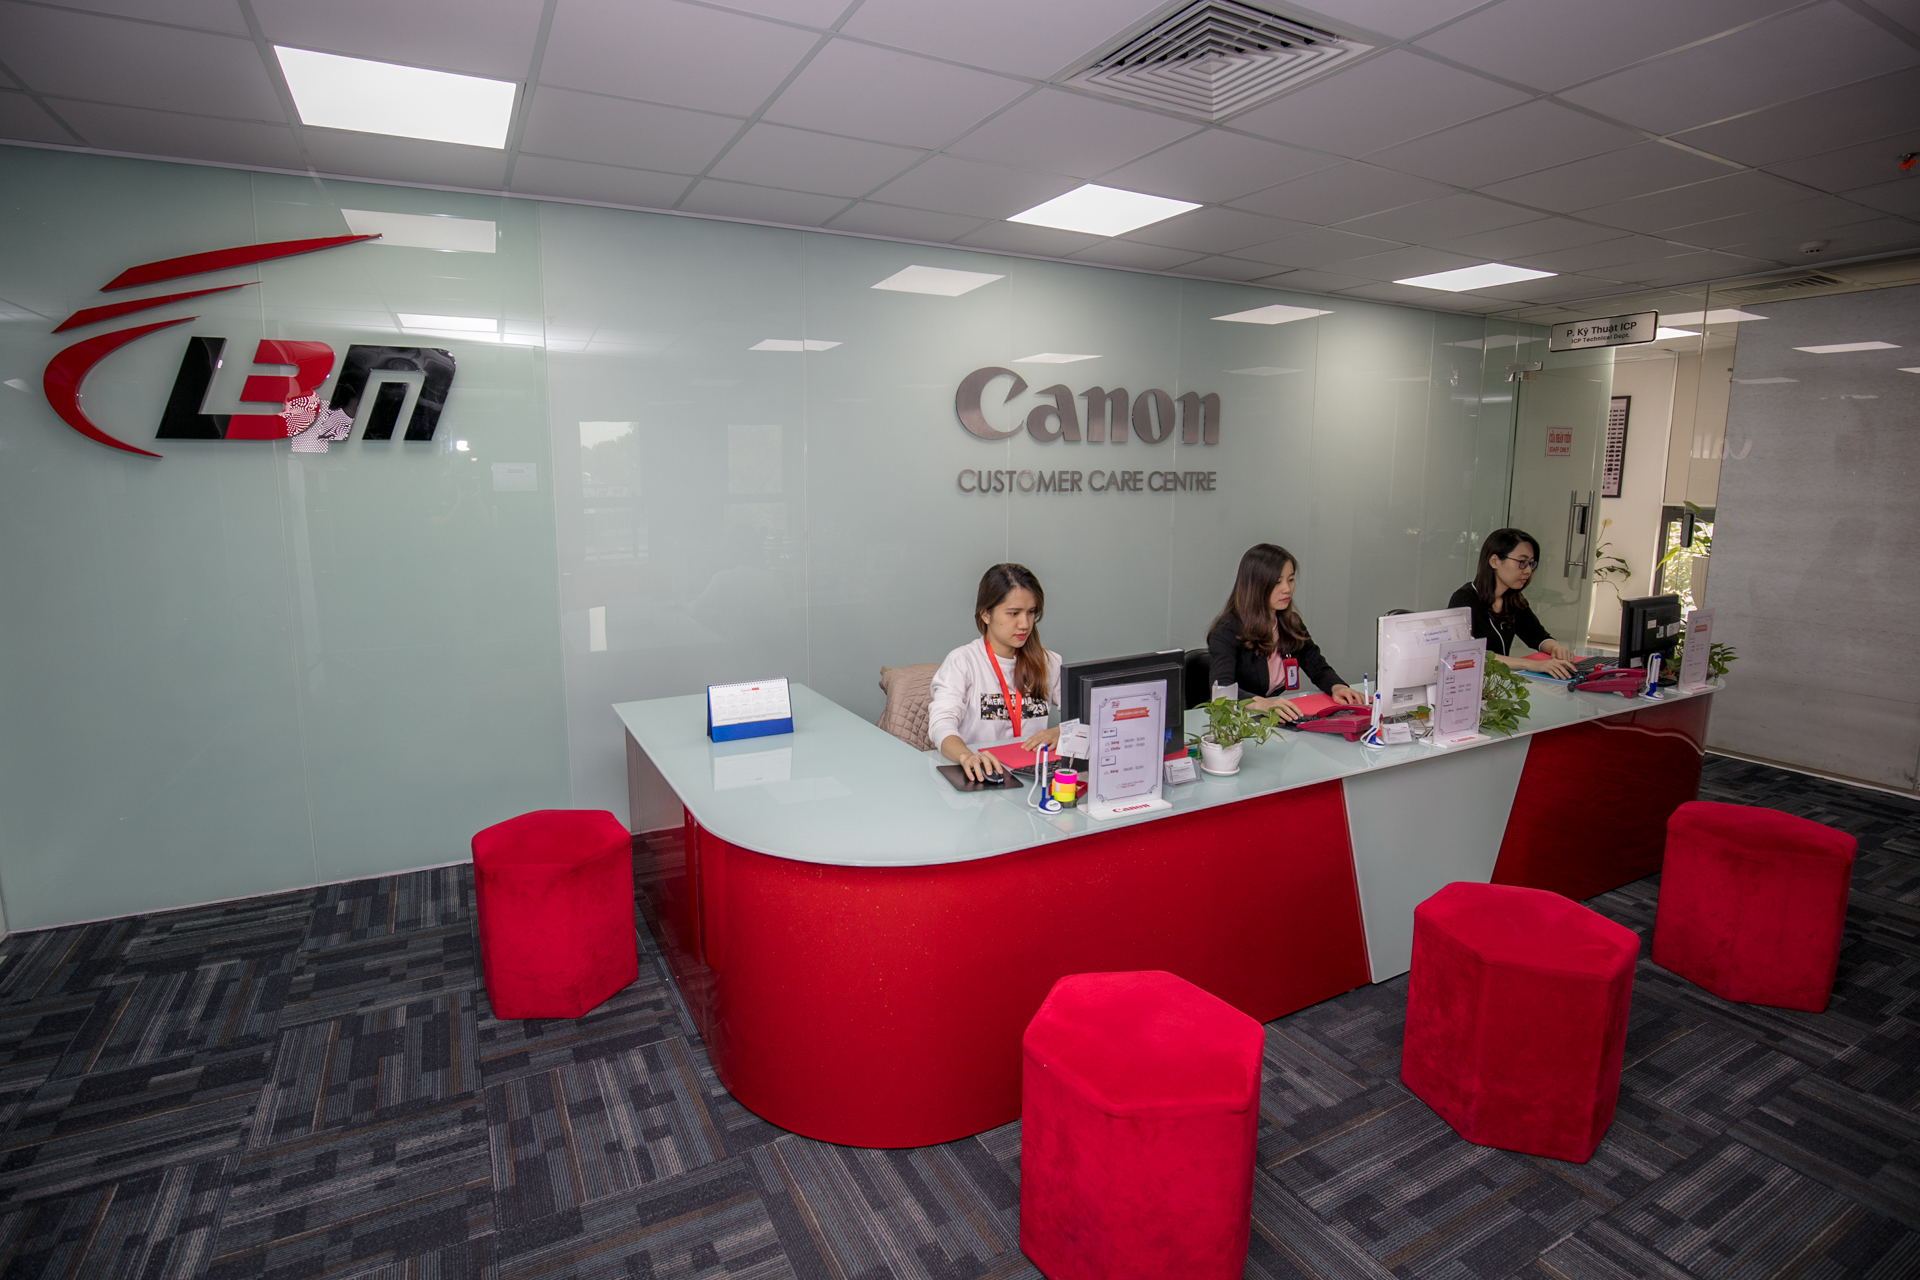 Canon cam kết chất lượng dịch vụ tại Việt Nam với Trung tâm Sửa chữa và Bảo hành chính hãng 2 triệu USD